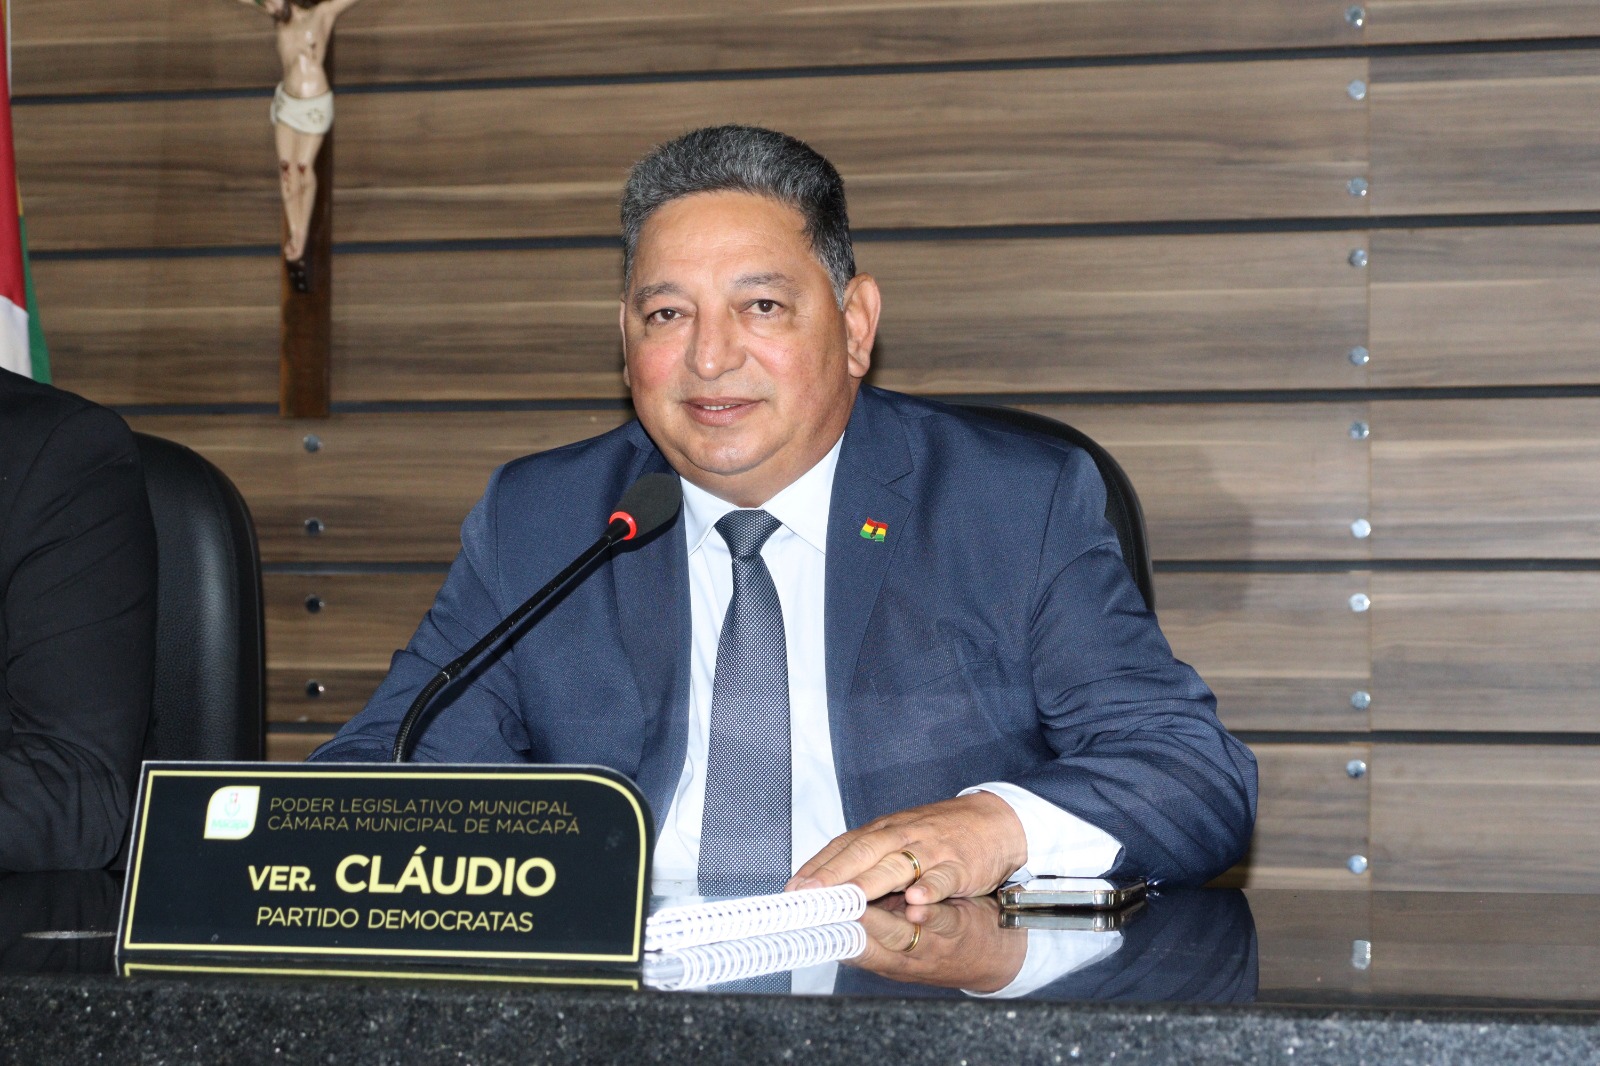 Vereador Cláudio Góes tem PL aprovado que inclui a educação climática nas escolas da rede municipal